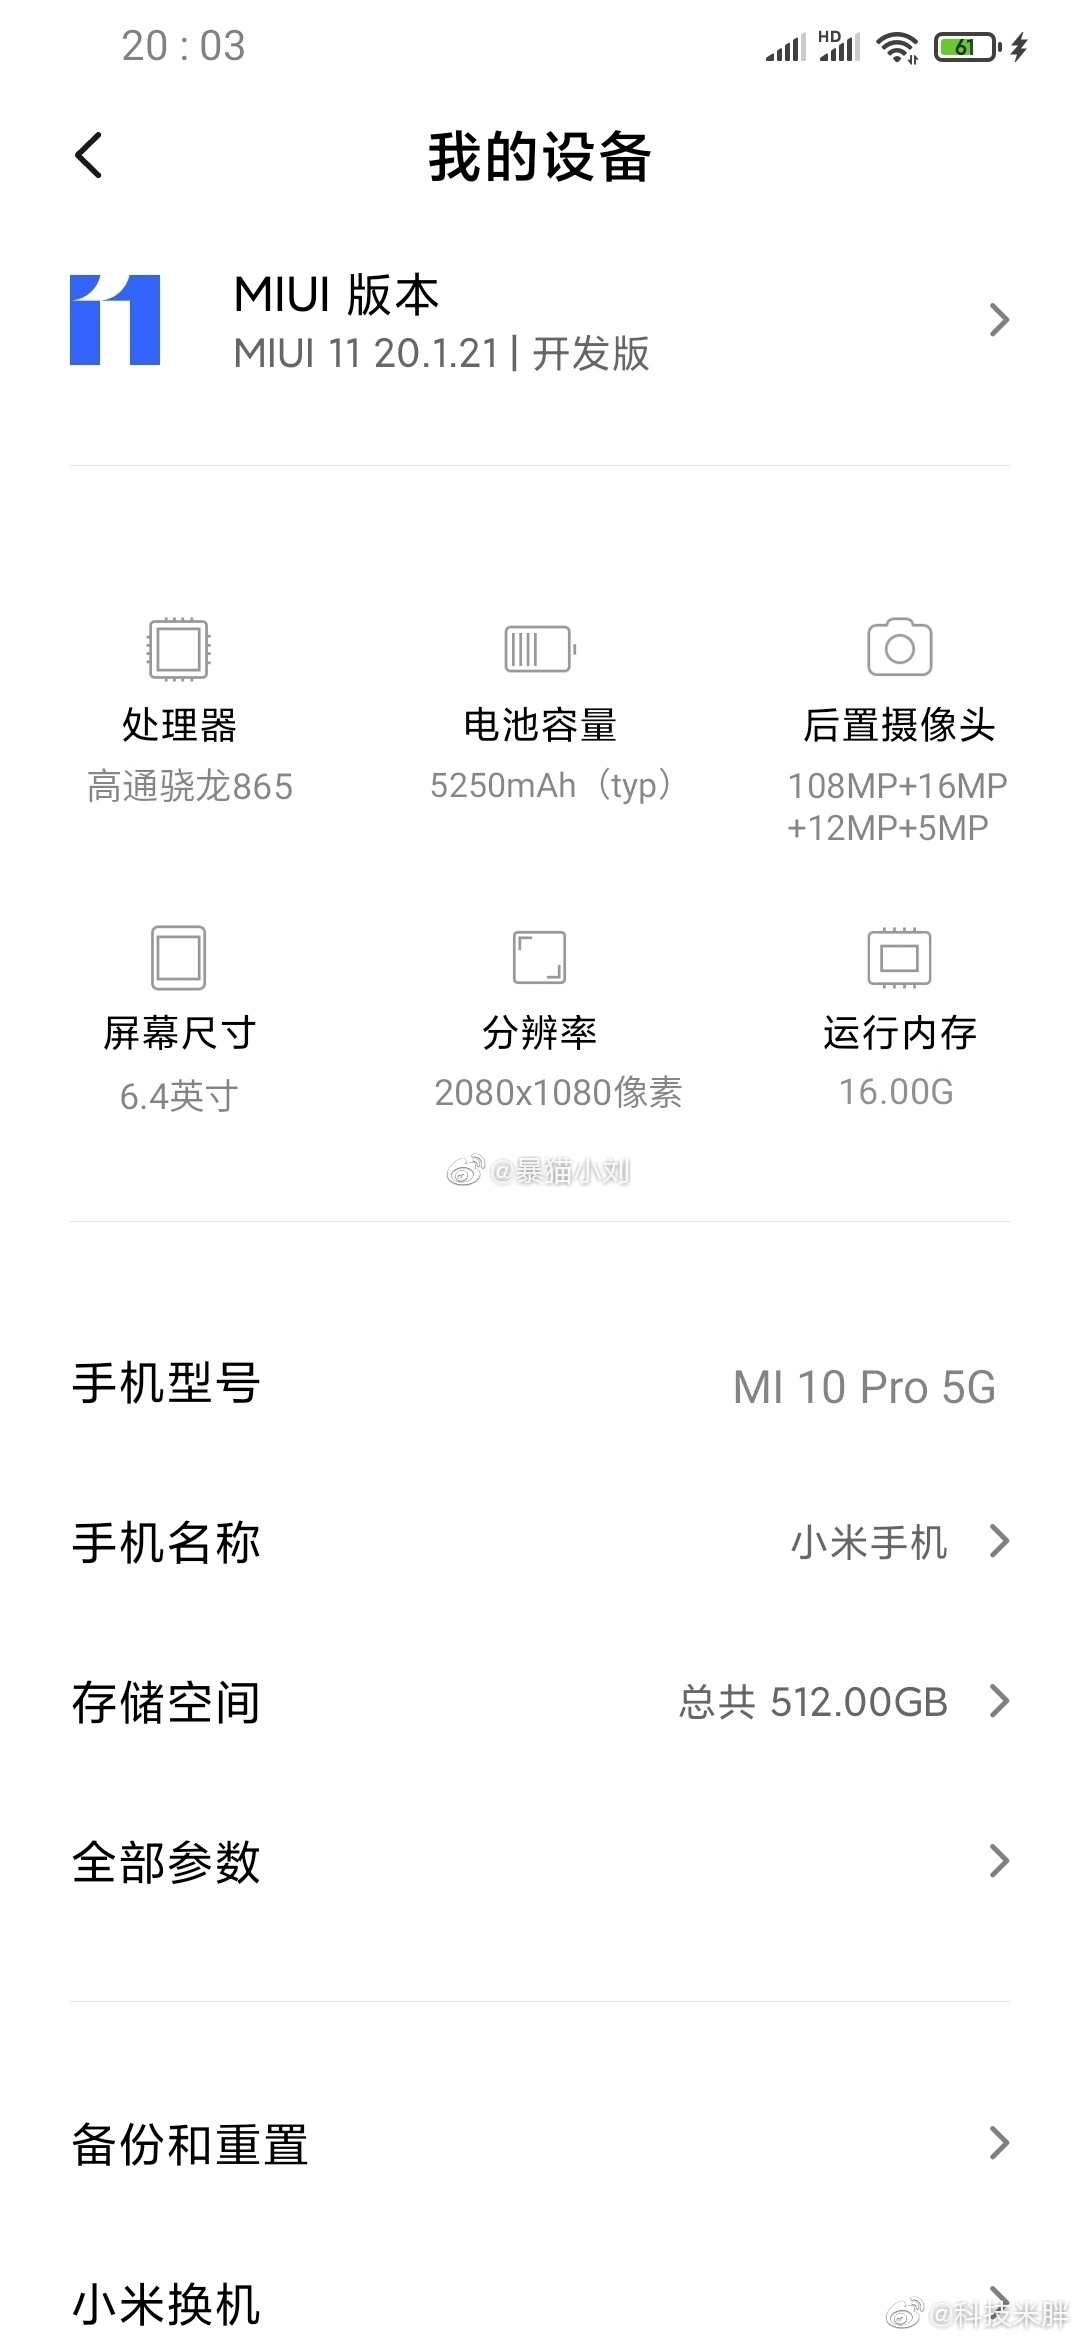 Poznalimy cz specyfikacji Xiaomi Mi 10 Pro 5G